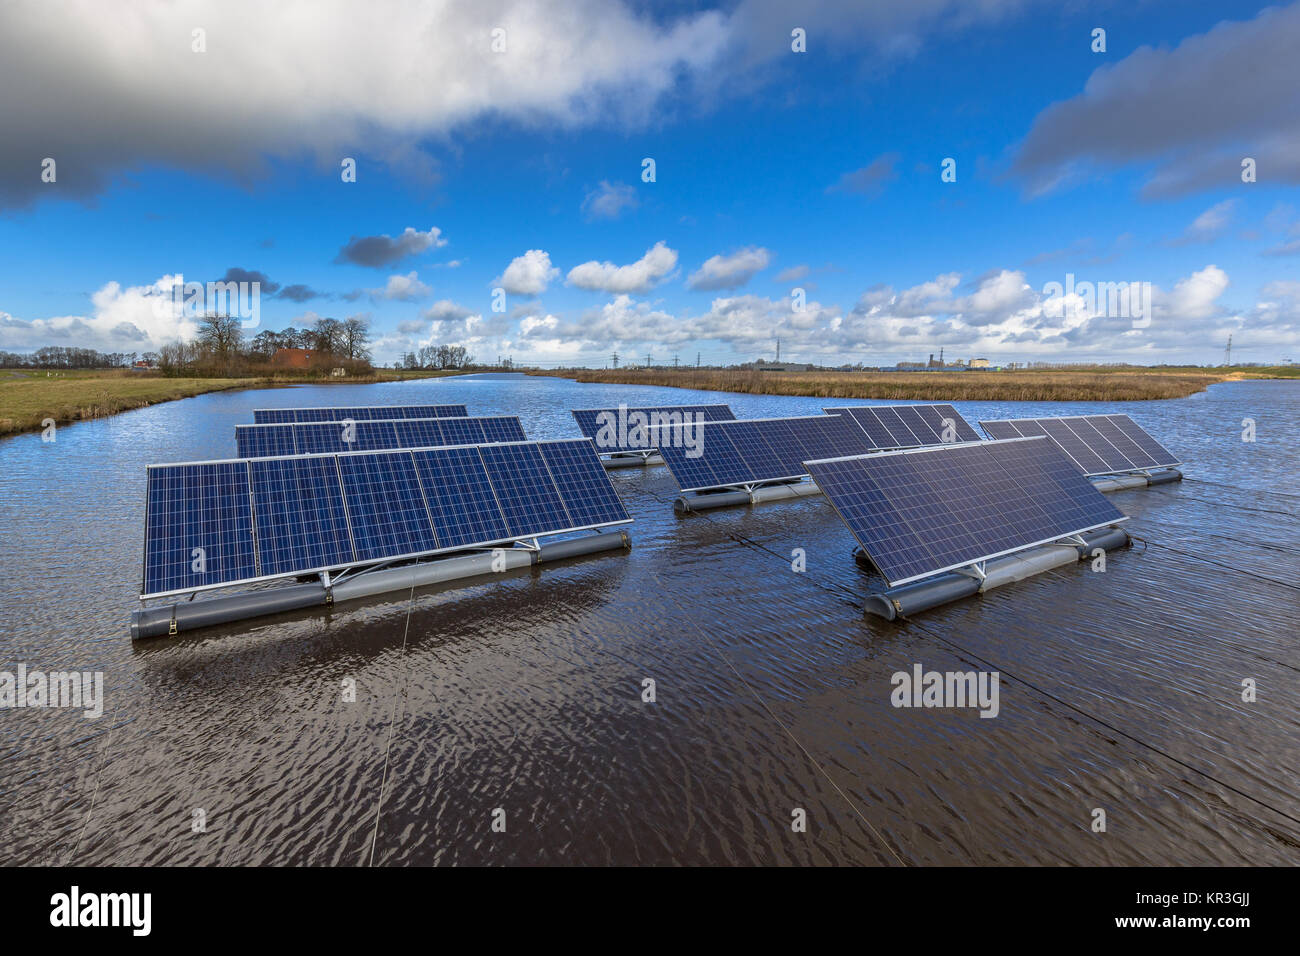 Grupo de paneles fotovoltaicos flotando en masas de agua abierta puede representar una alternativa seria a los sistemas solares montados en suelo Foto de stock